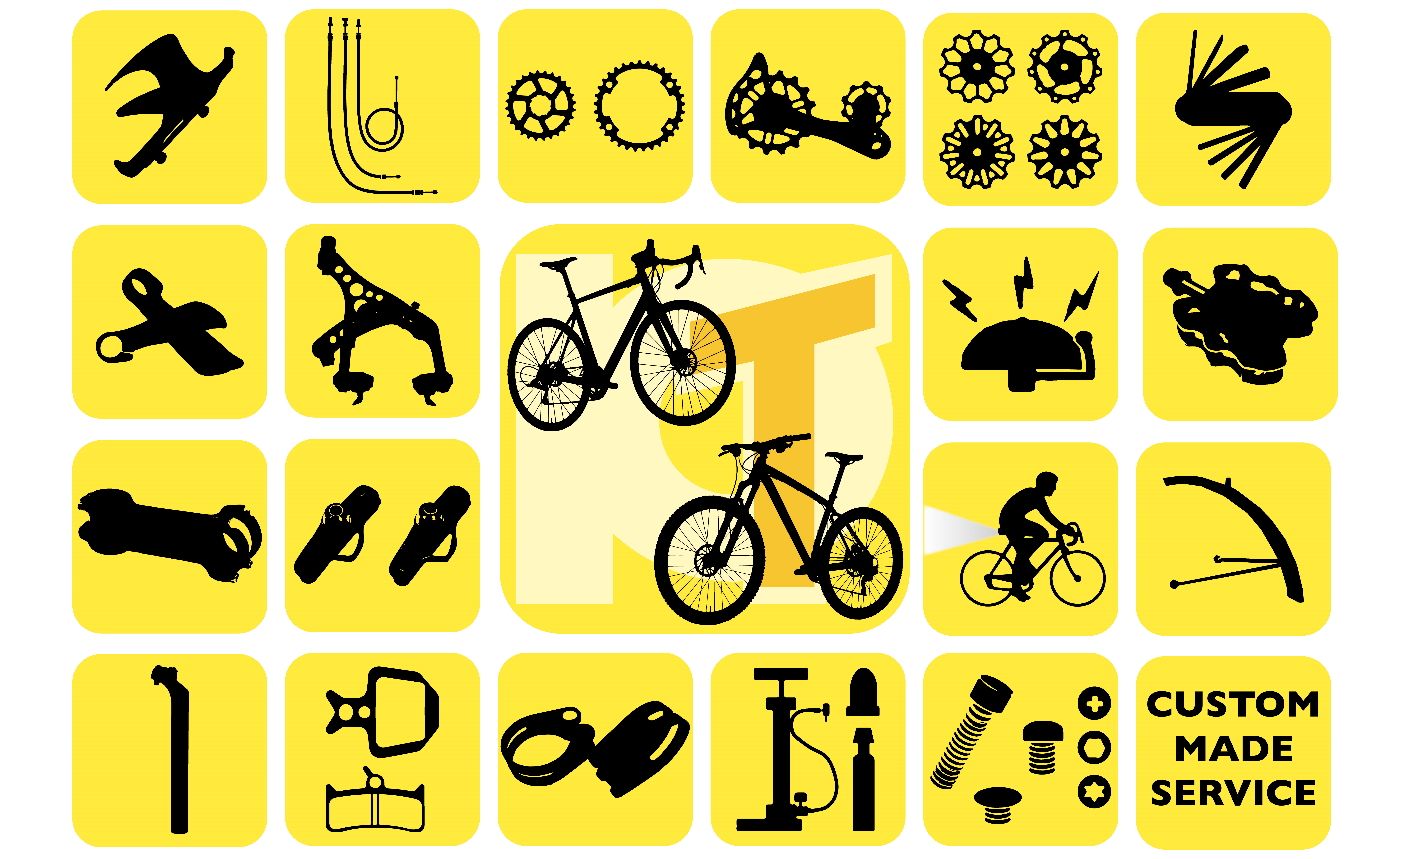 Tutti i tipi di parti per biciclette sono disponibili in Pan Taiwan